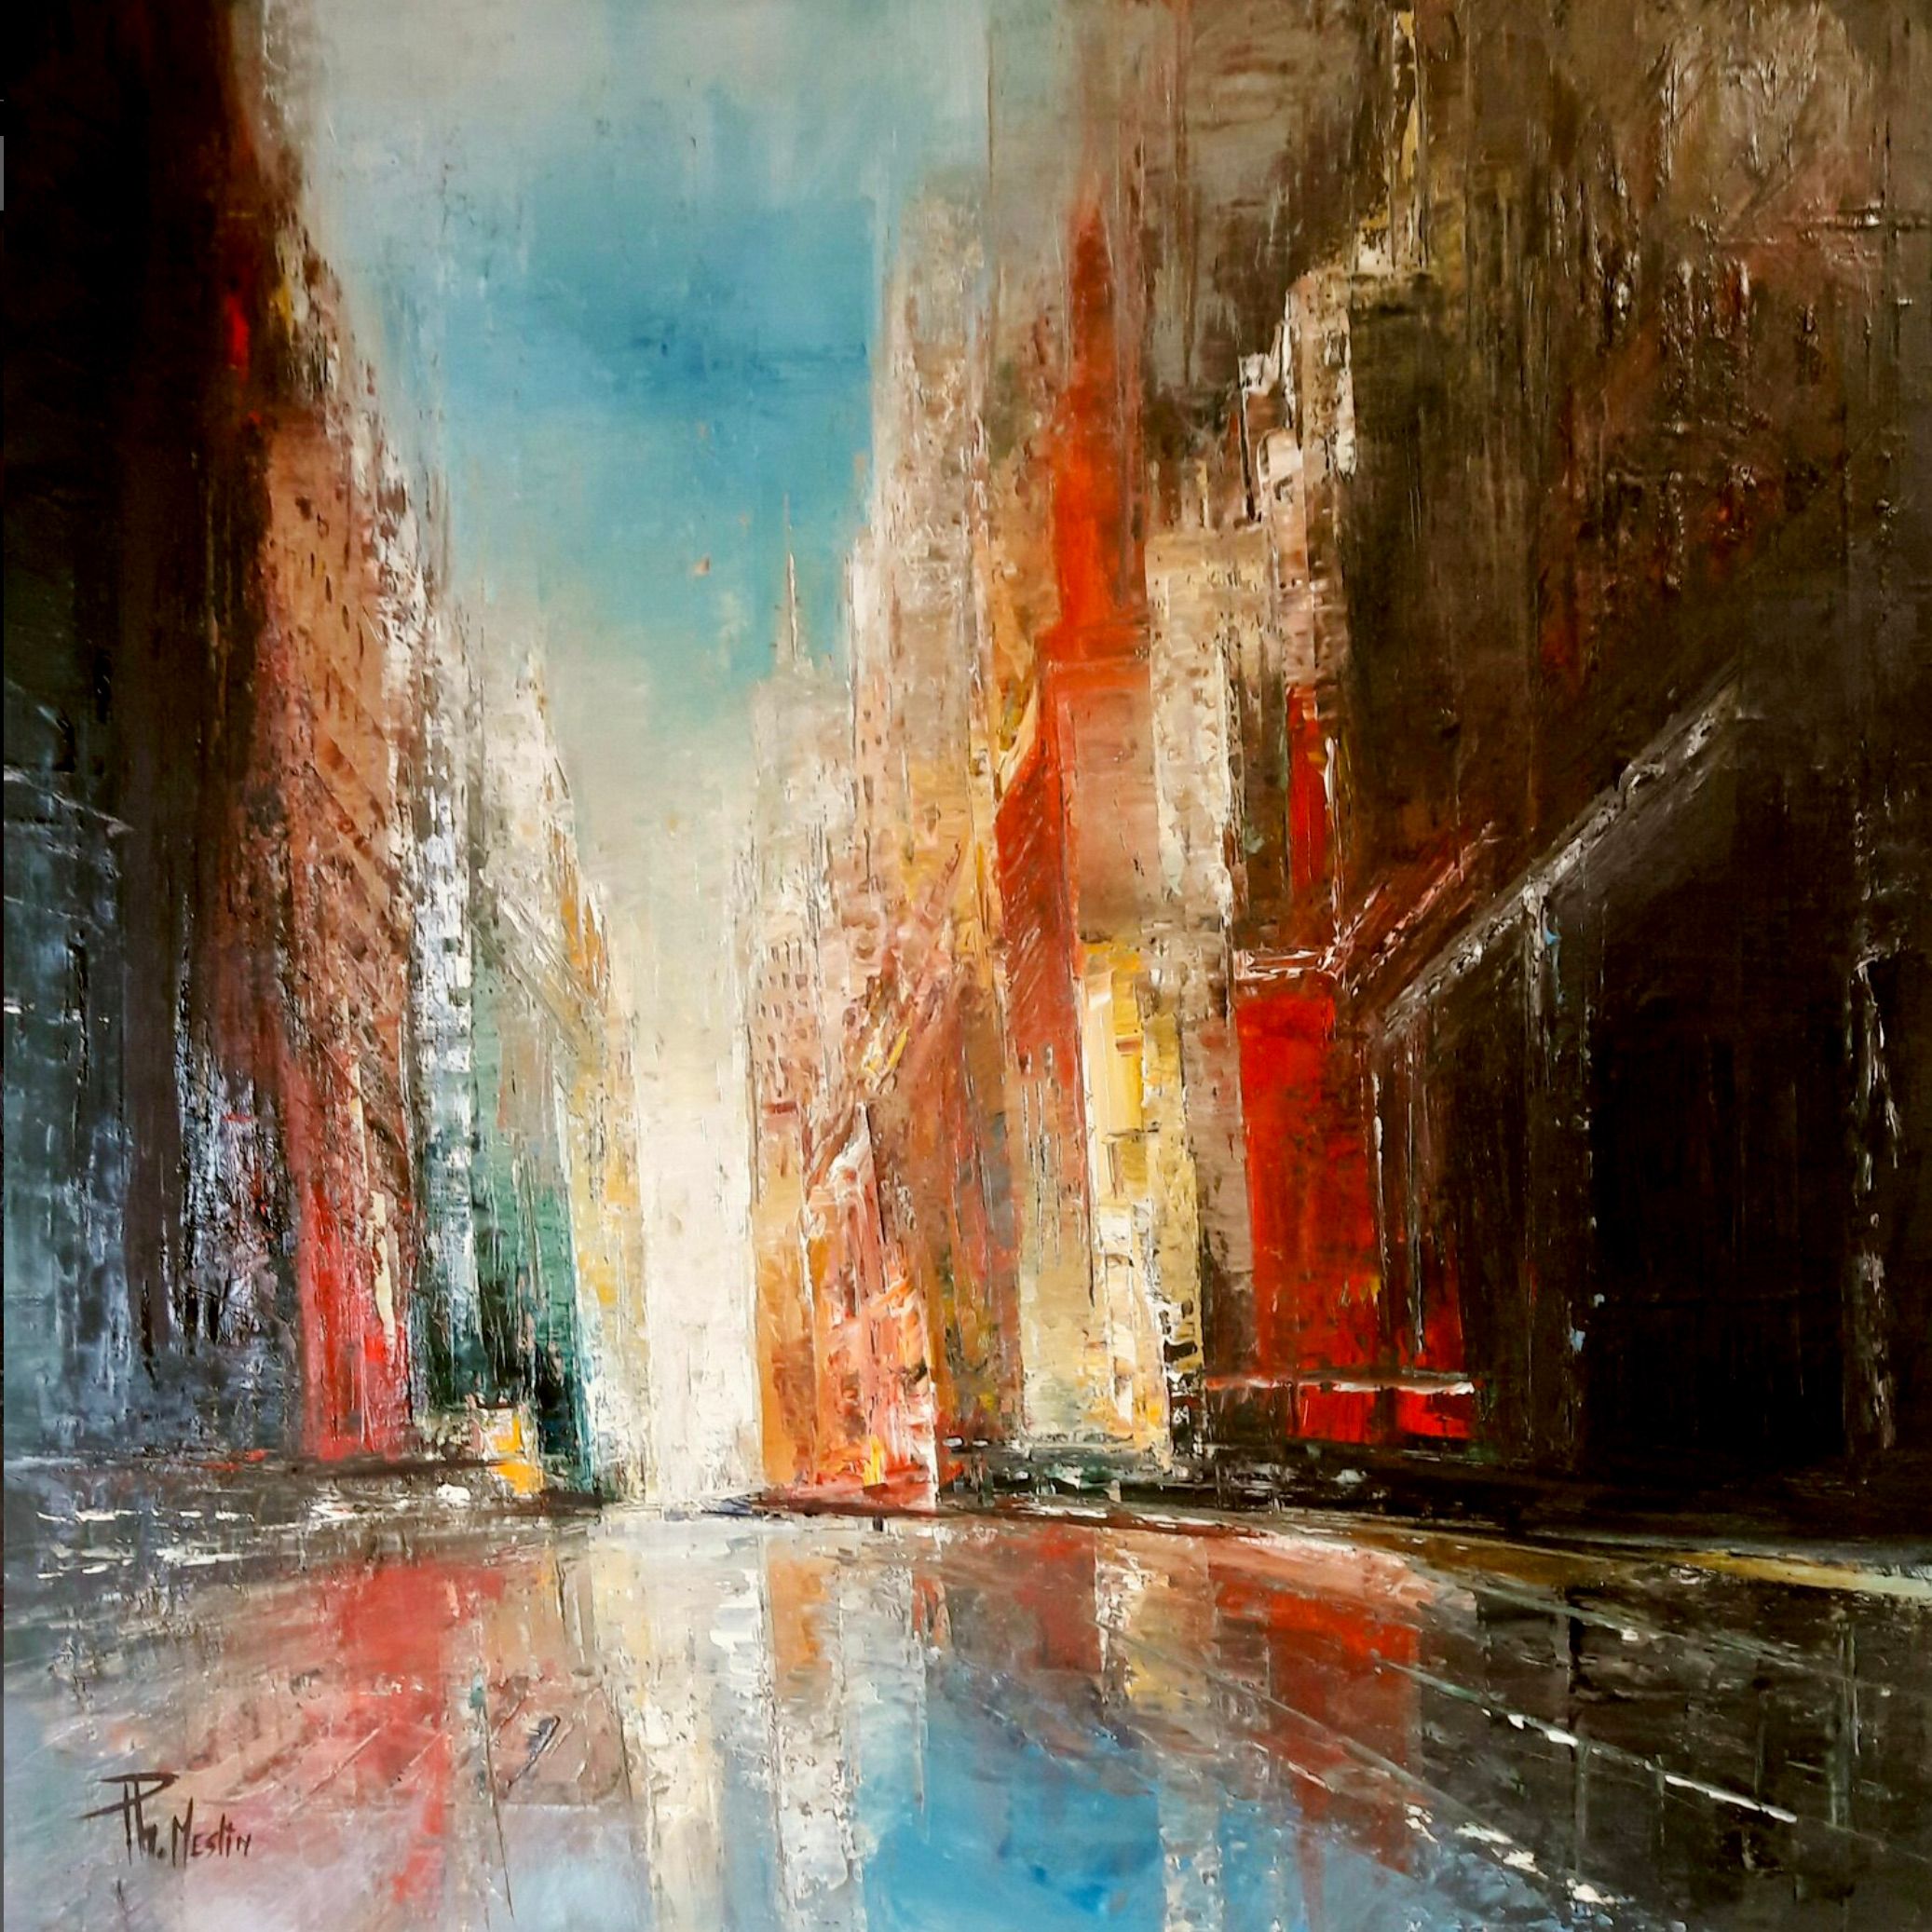 Philippe Meslin "Reflets urbains", est une peinture à l'huile figurative, un peu abstraite et colorée, représentant une ville.